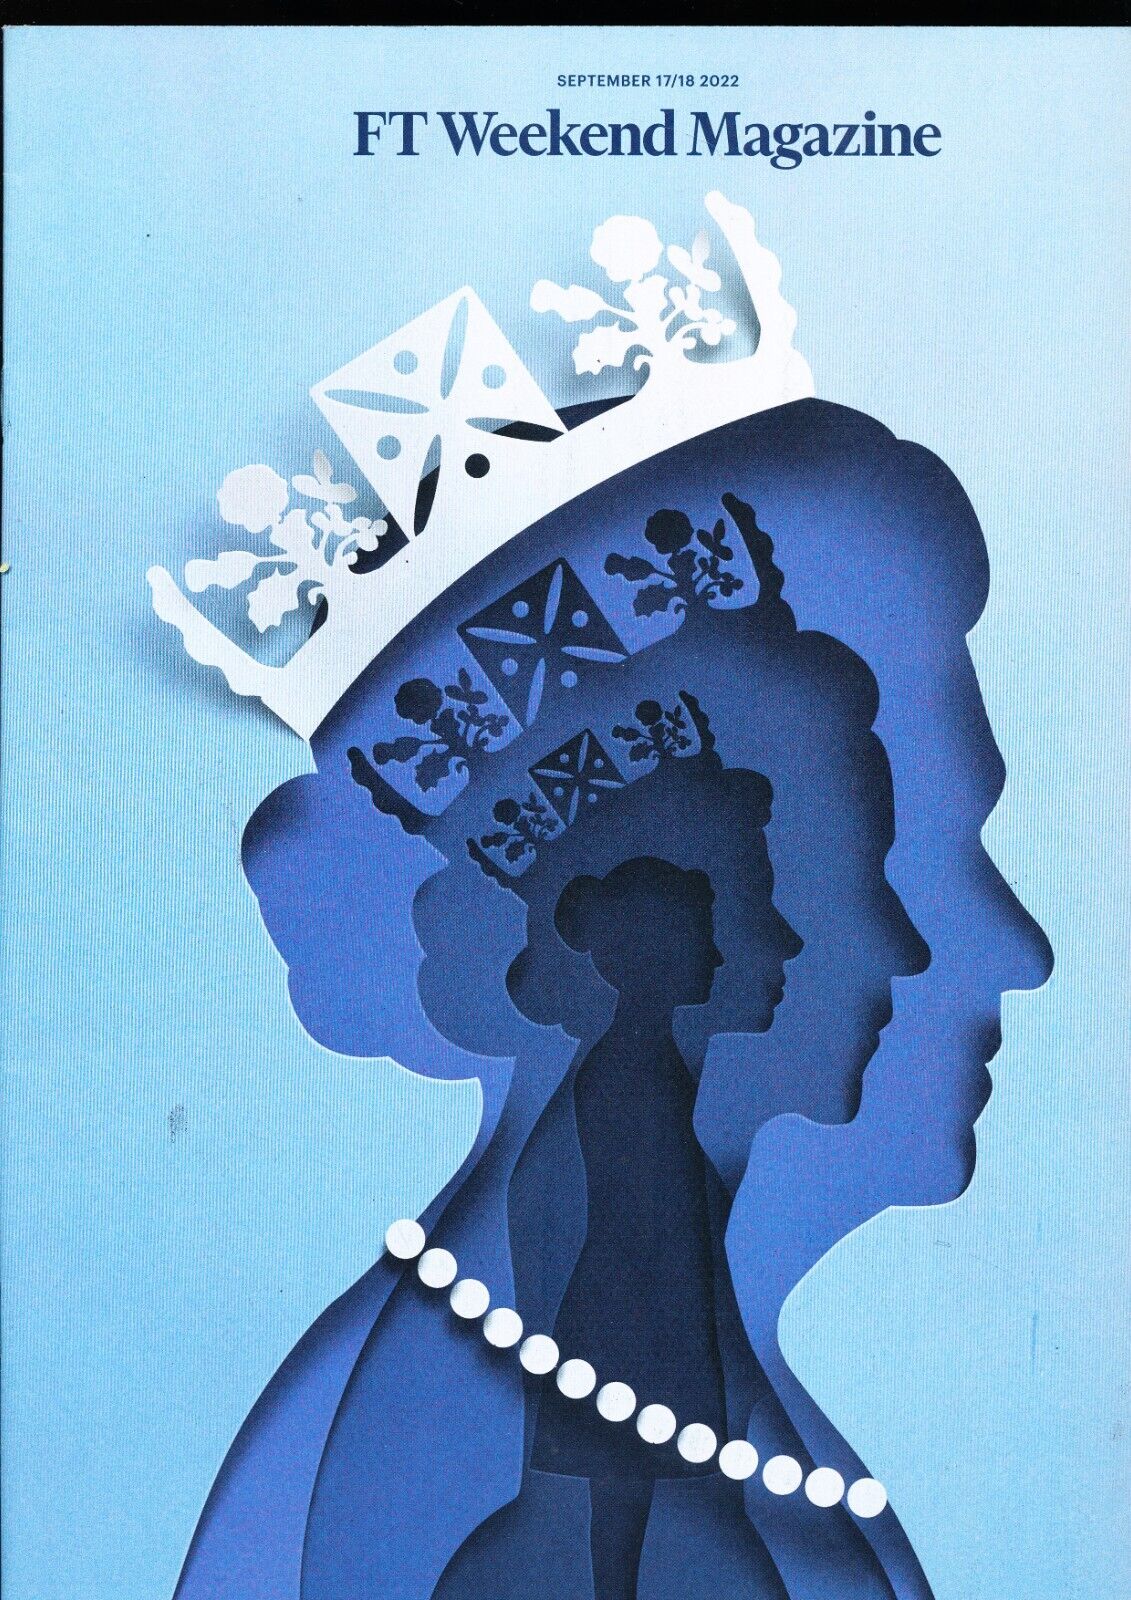 FT Weekend Magazine September 17 2022 Queen Elizabeth II 1926 - 2022